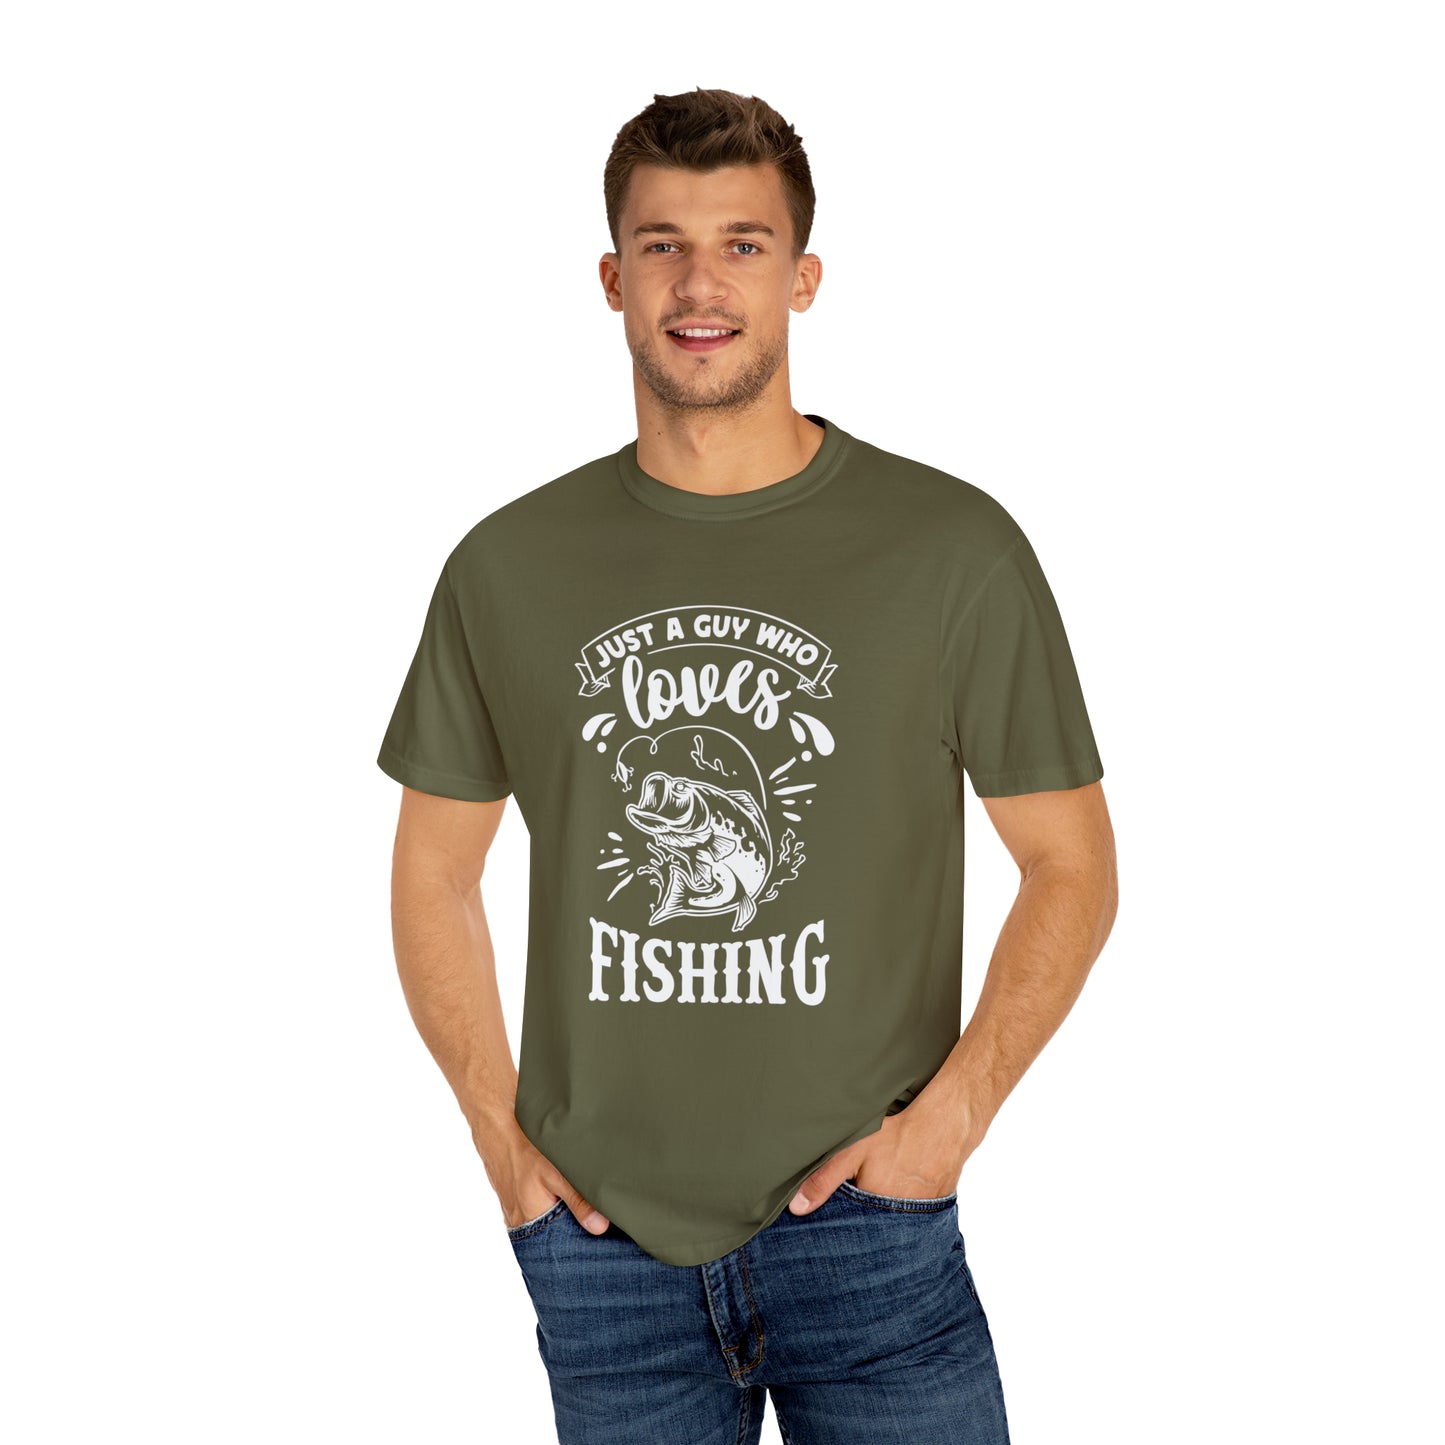 Pescador apasionado: expresa tu amor por la pesca con estilo - Camiseta